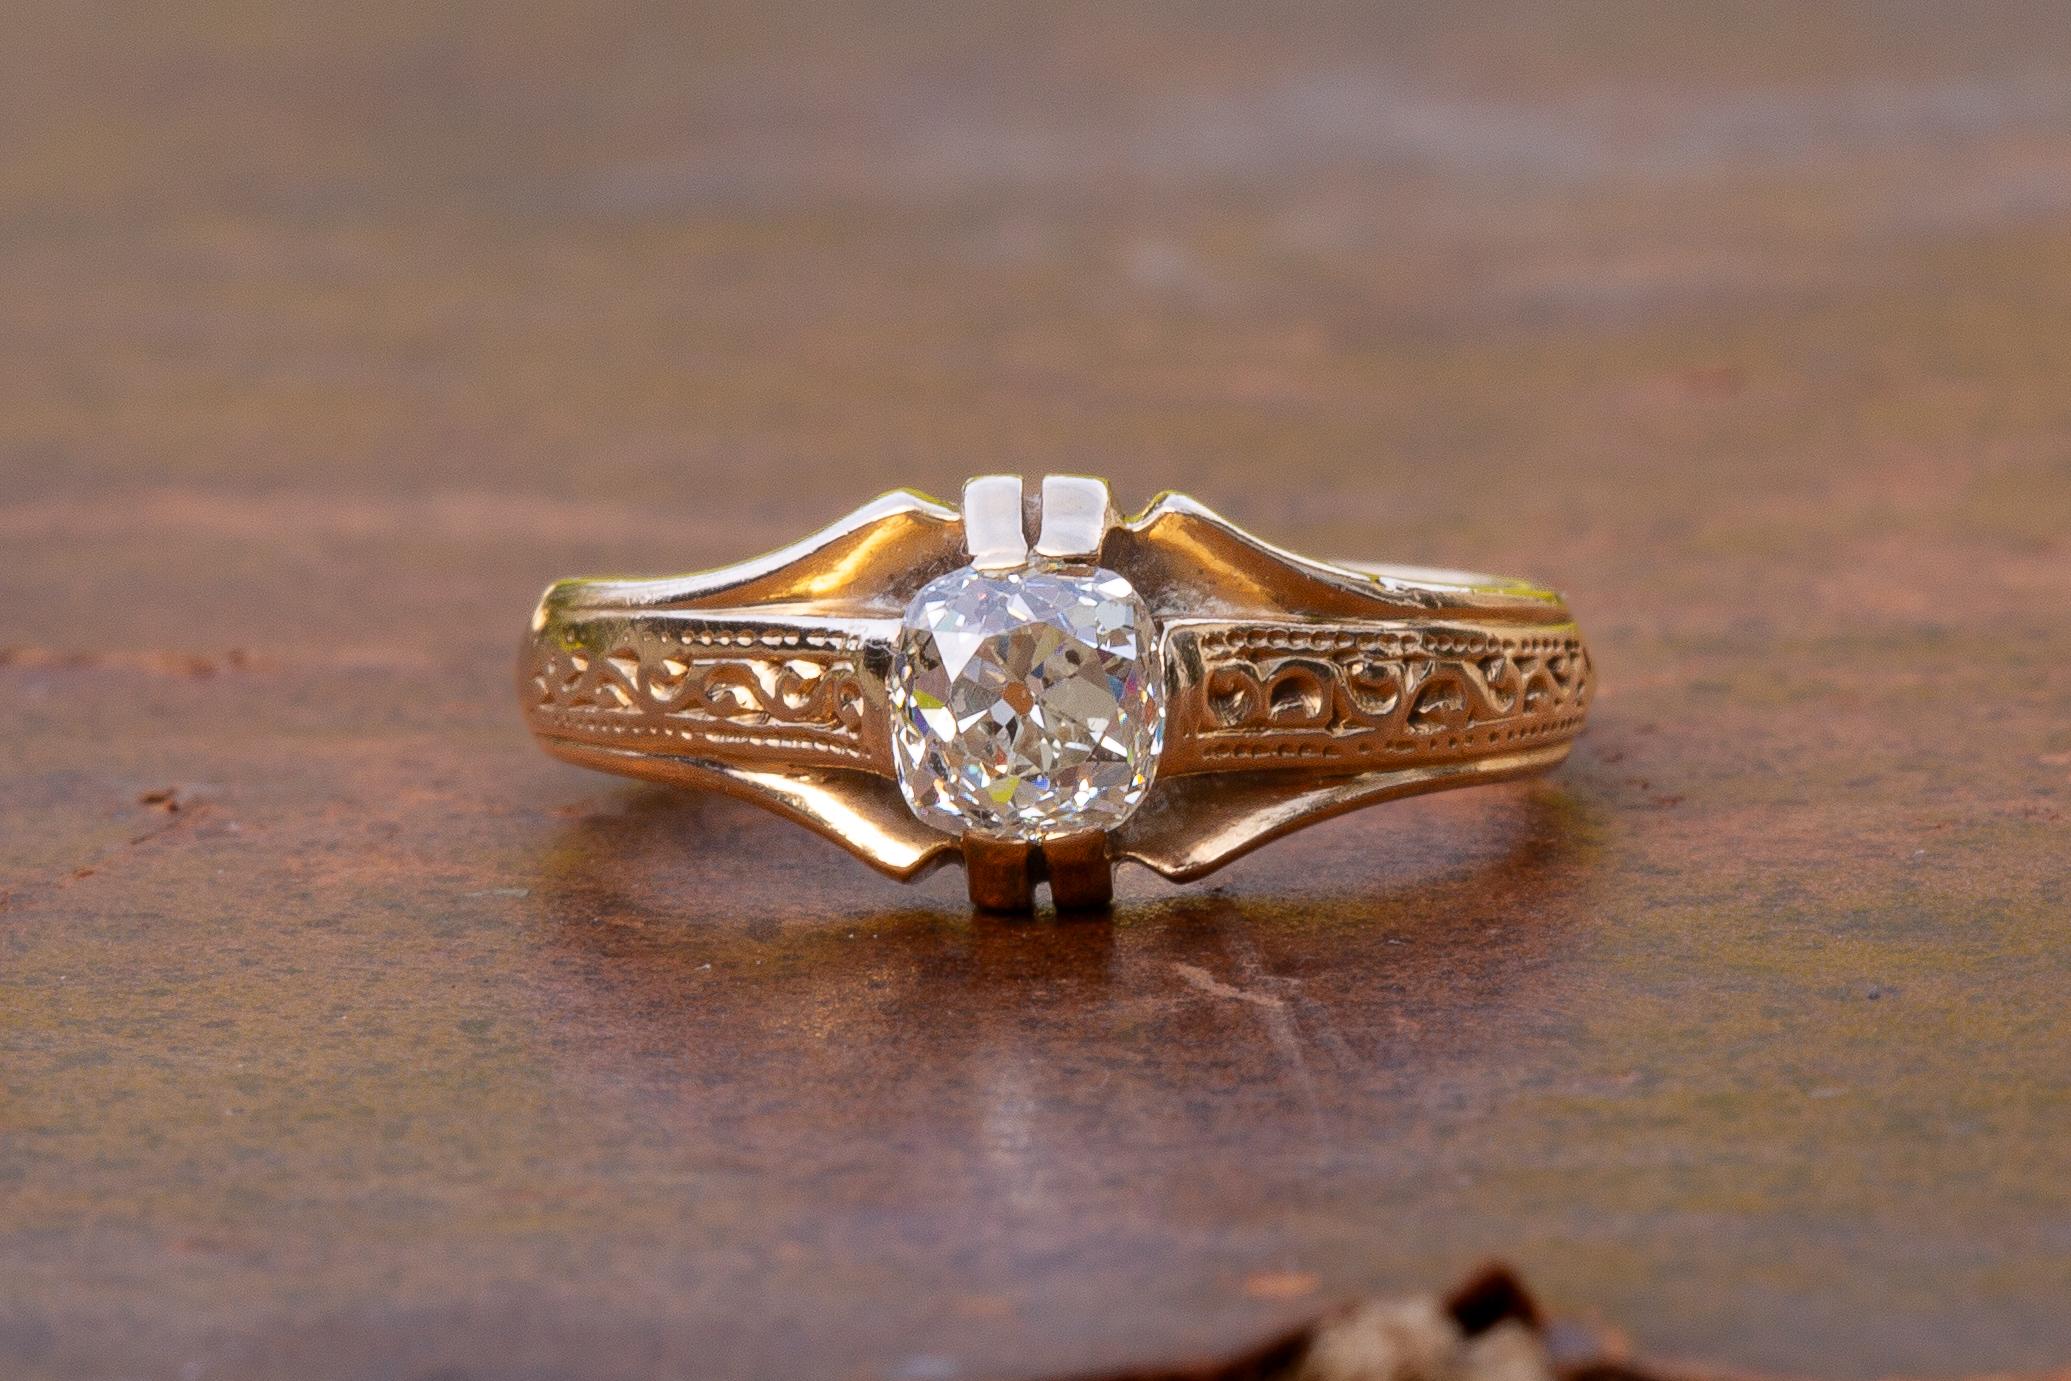 Dieser schöne antike Diamantsolitär wurde in Österreich-Ungarn um 1900 hergestellt. Der Ring ist mit einem fantastisch hellen und funkelnden Diamanten im Kissenschliff mit einem Gewicht von 0,65 ct besetzt.

Der Ring ist aus massivem 14-karätigem